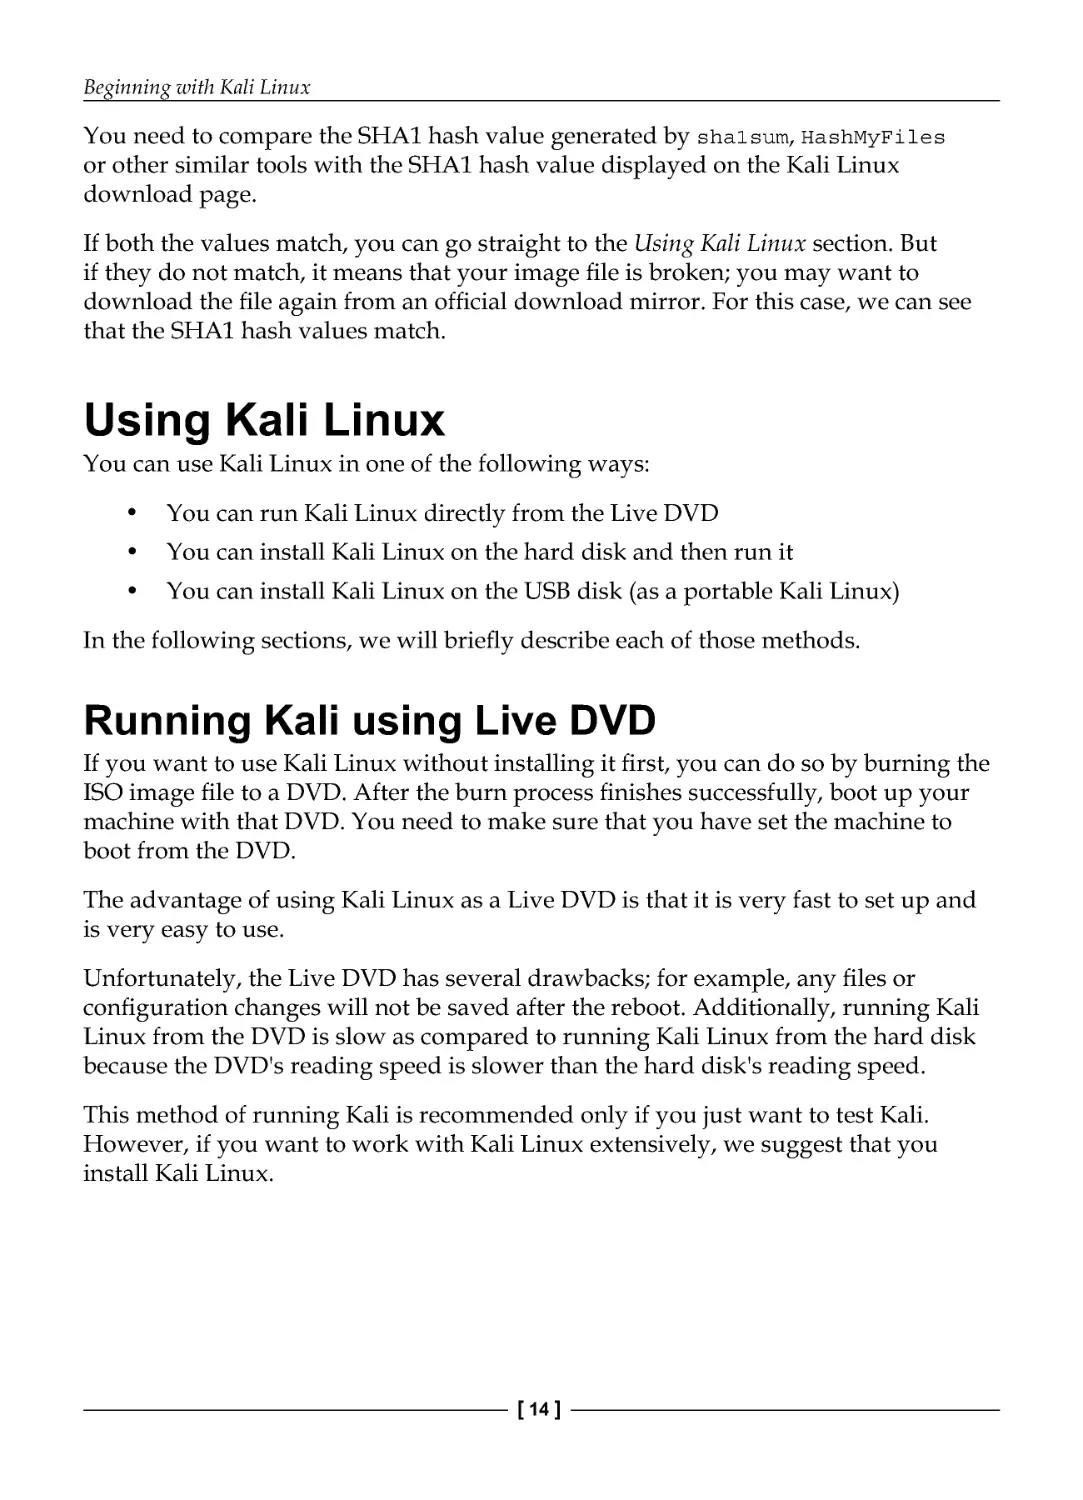 Using Kali Linux